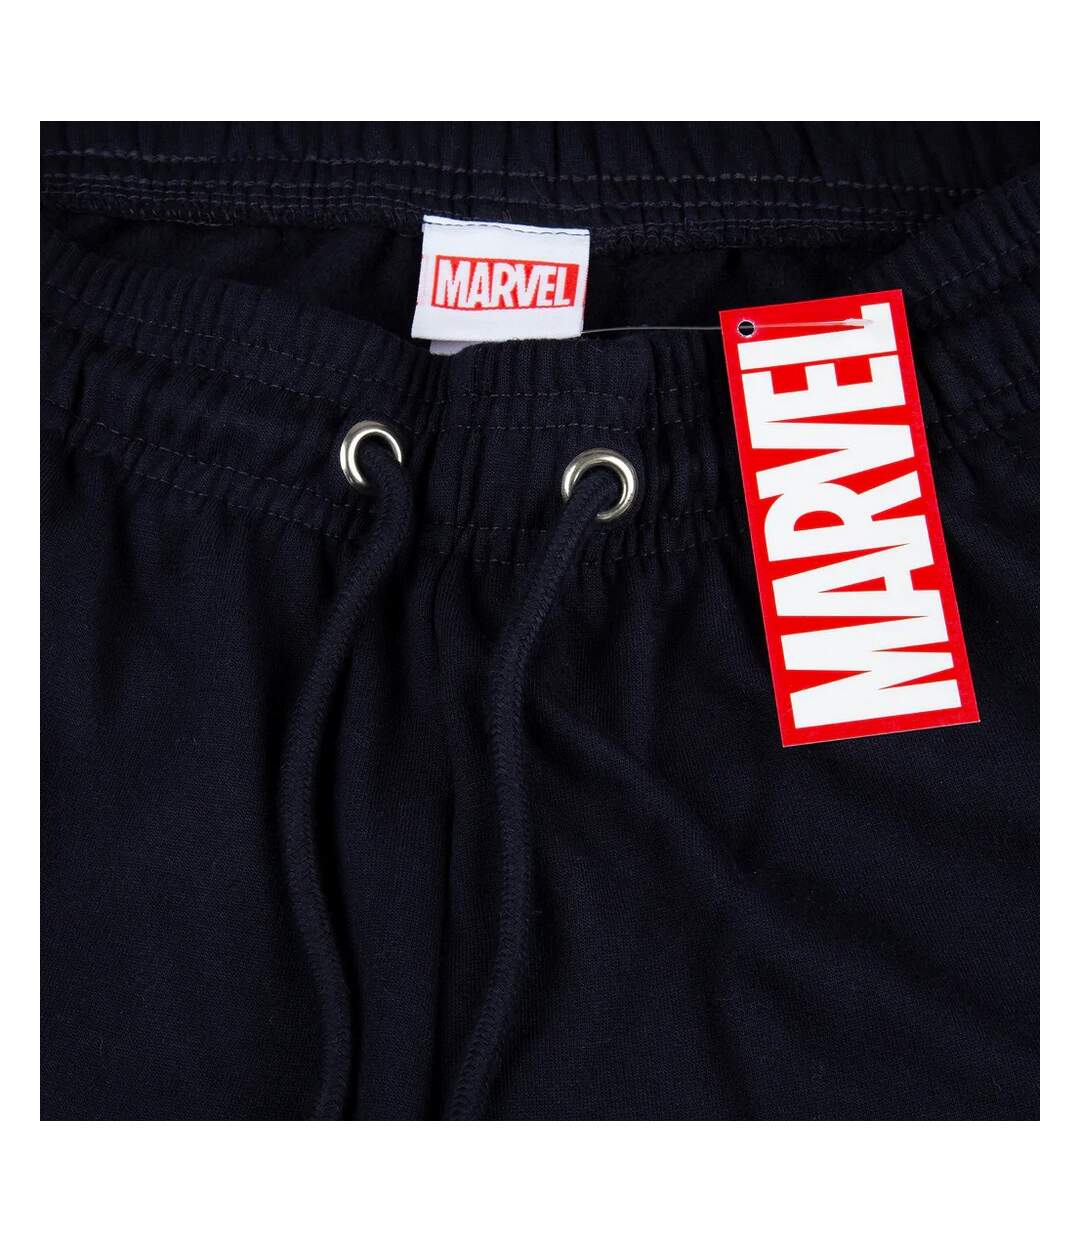 Marvel Comics - Pantalon de jogging - Homme (Noir) - UTTV190